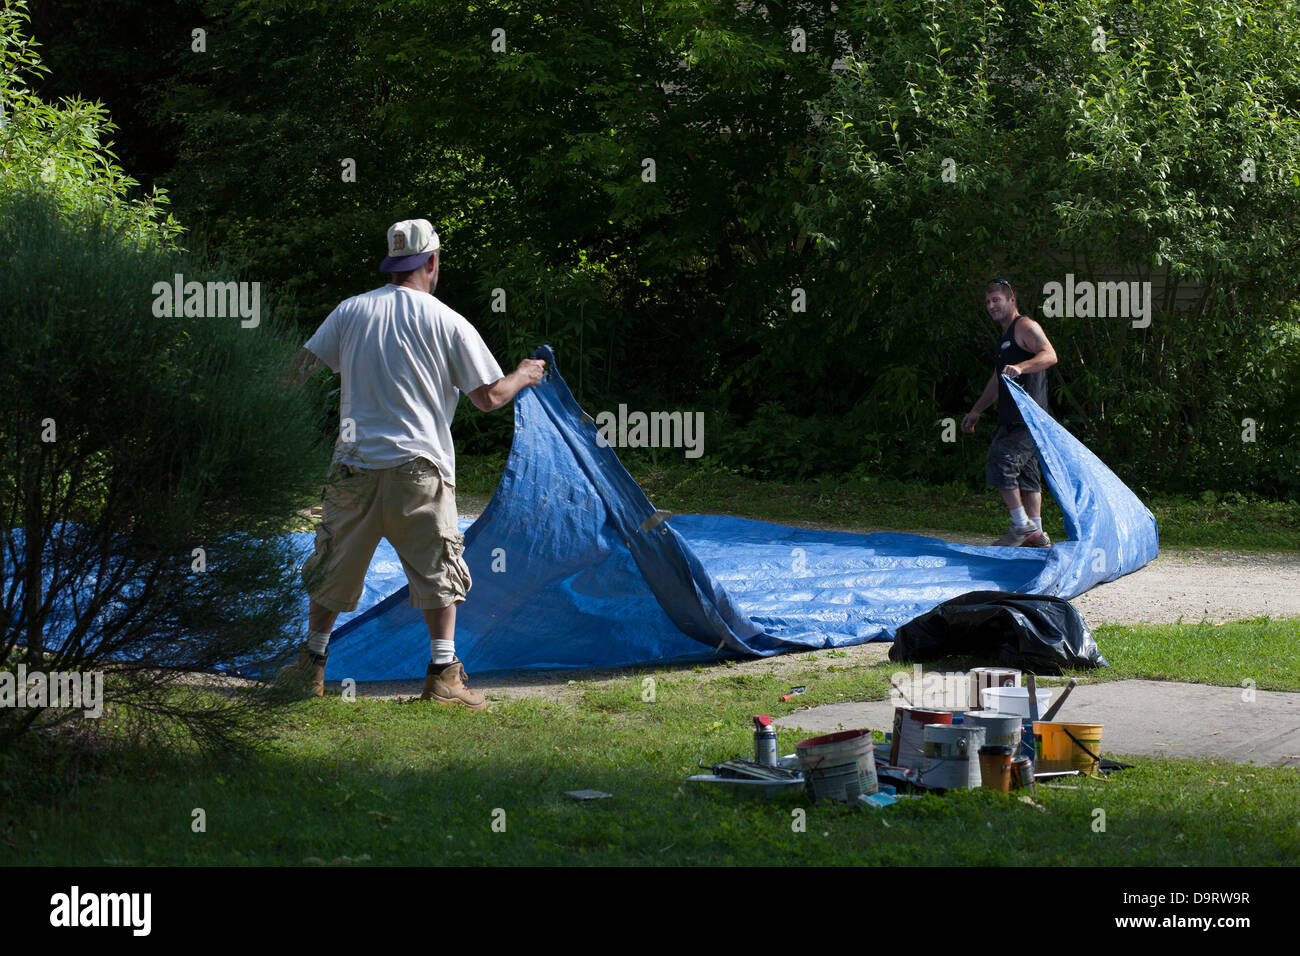 Par un après-midi d'été, deux hommes nettoyer après un travail de peinture. Ils sont leur pliage tissu avant qu'ils quittent le travail. Banque D'Images